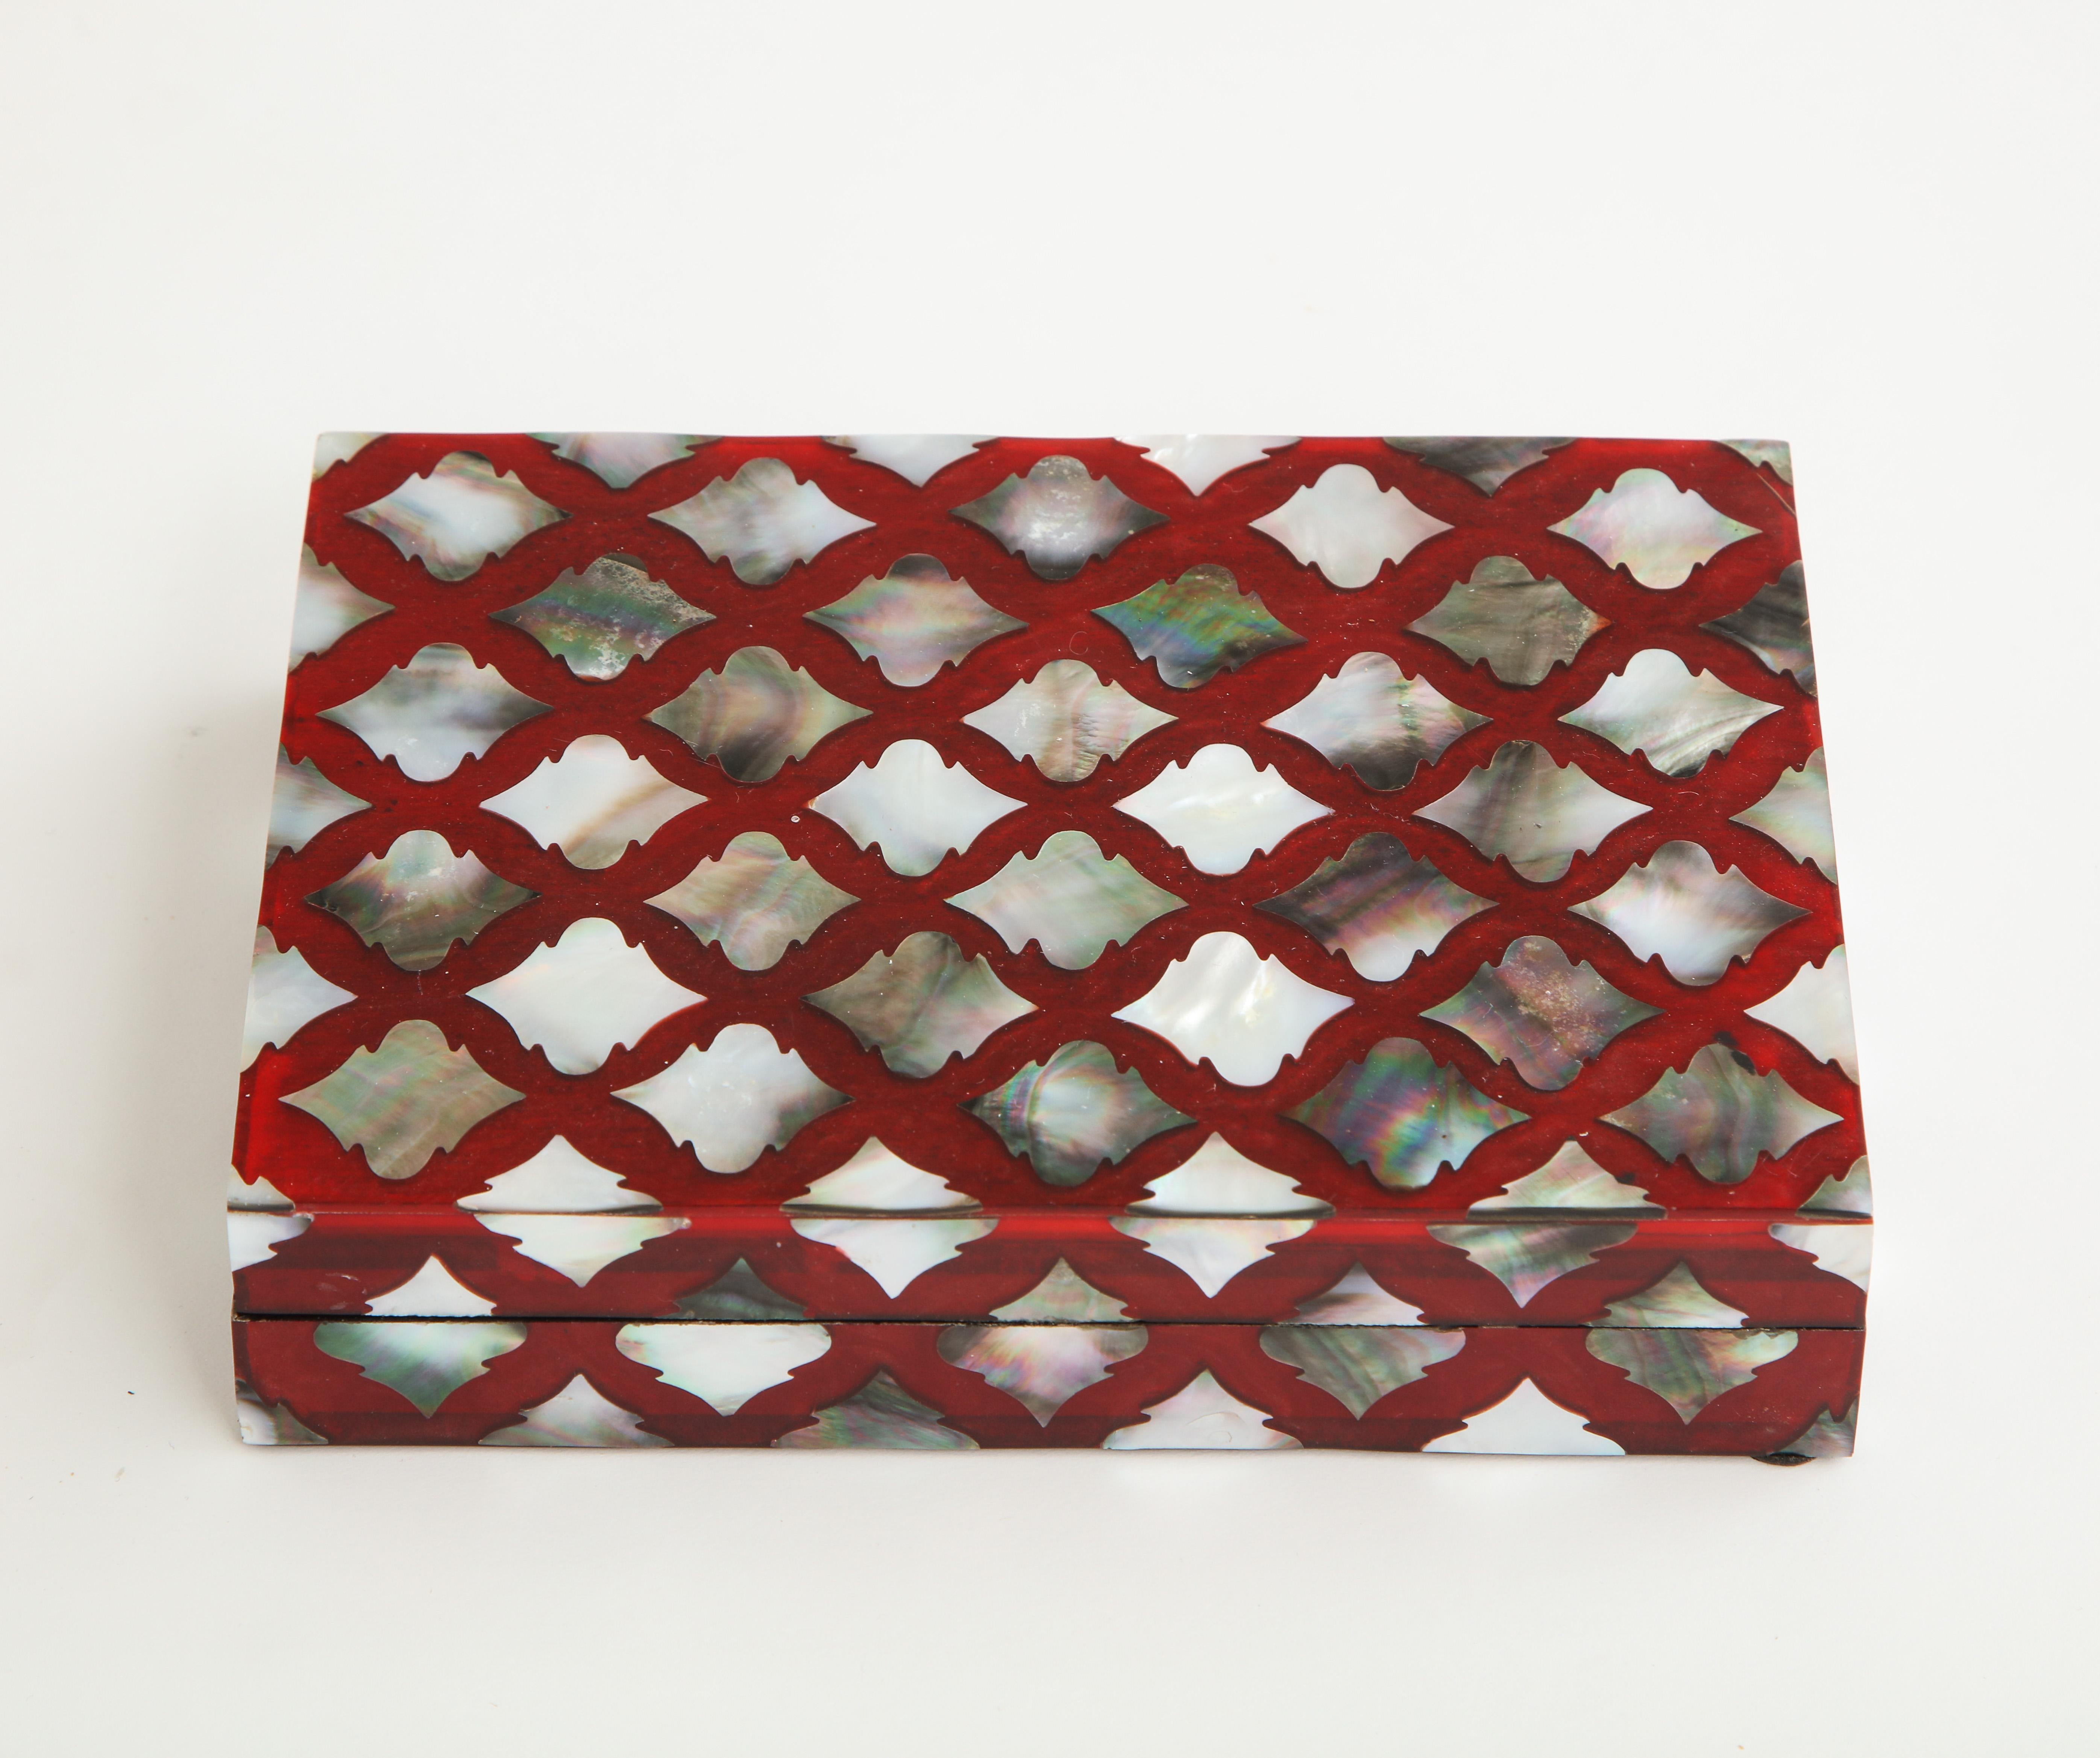 Contemporary Moorish Influenced Abalone Shell Decorative Box